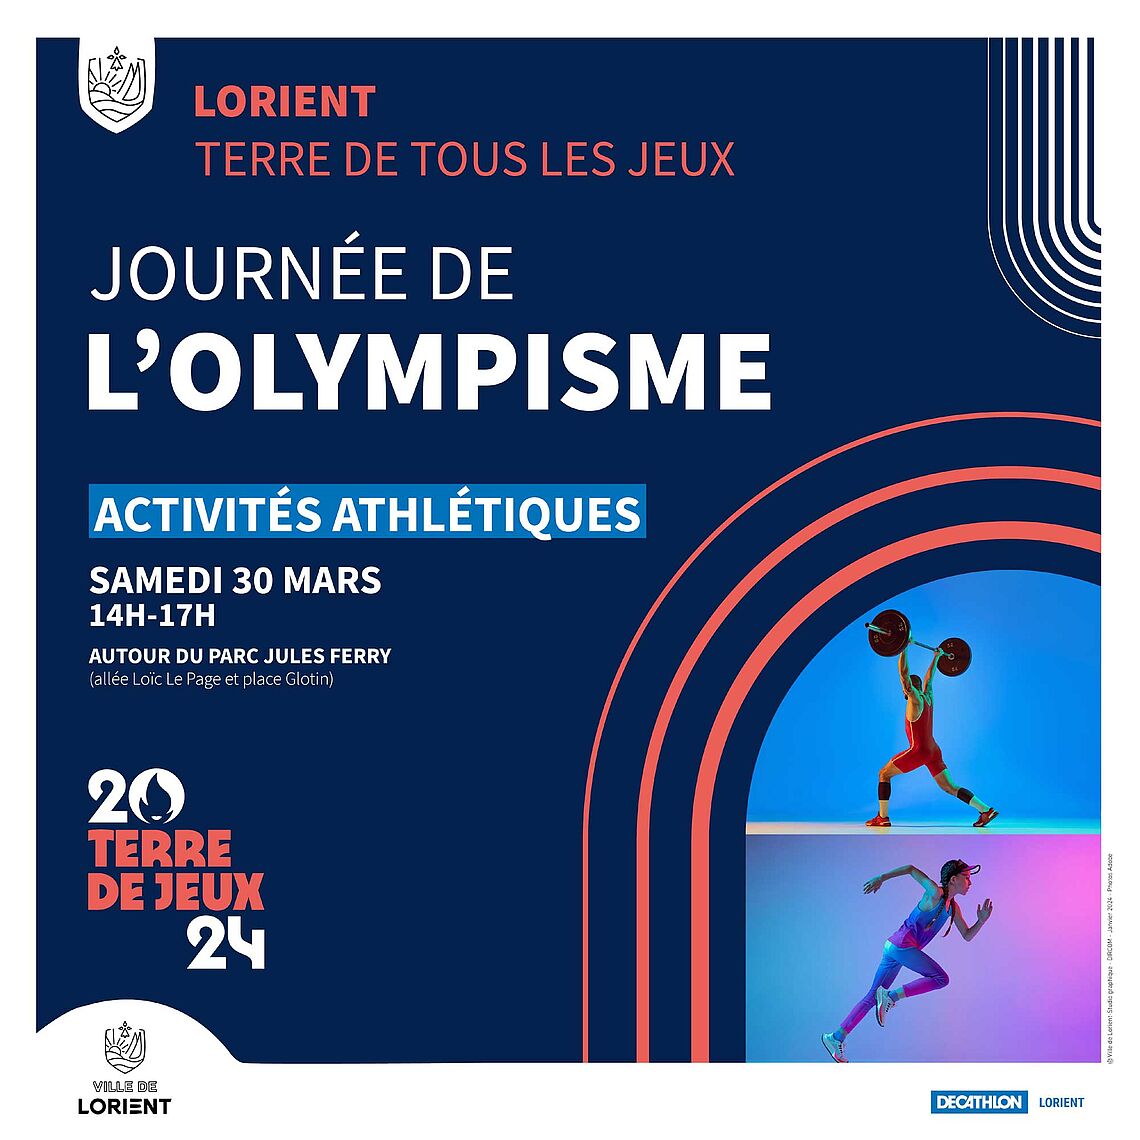 Journée de l’olympisme dédiée aux activités athlétiques. Cliquez pour accéder à un diaporama de photos prises le 30 mars par Fanch Galivel